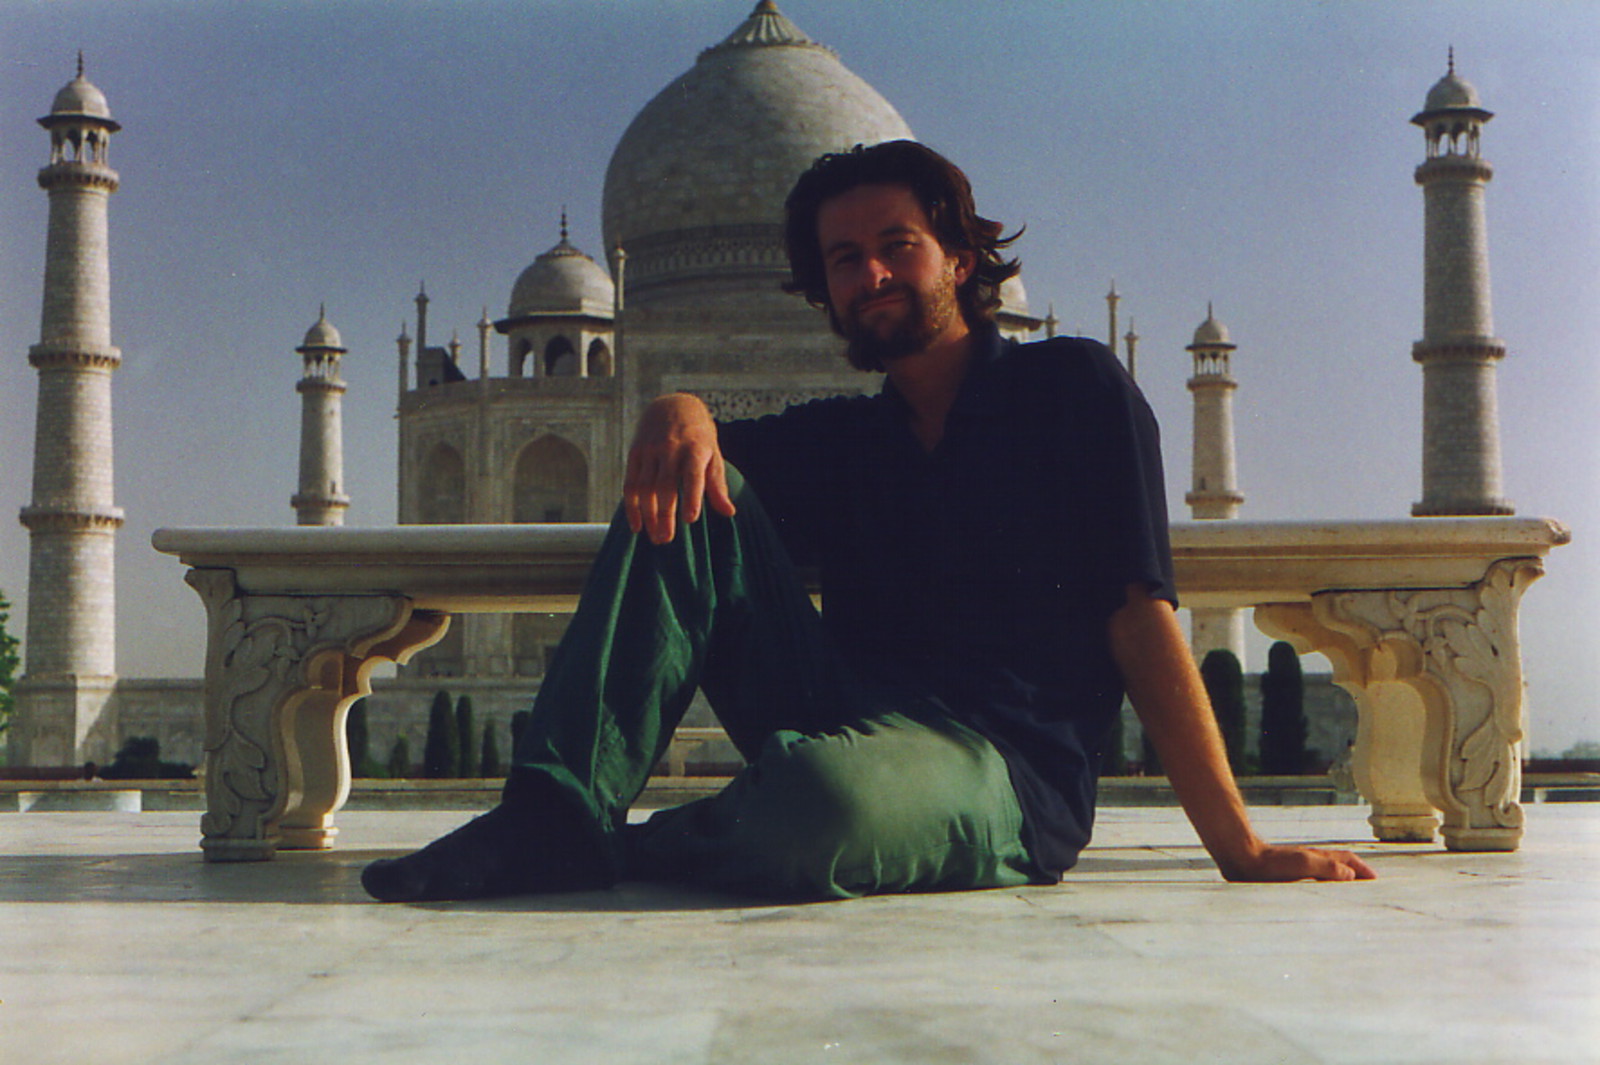 Mark in front of the Taj